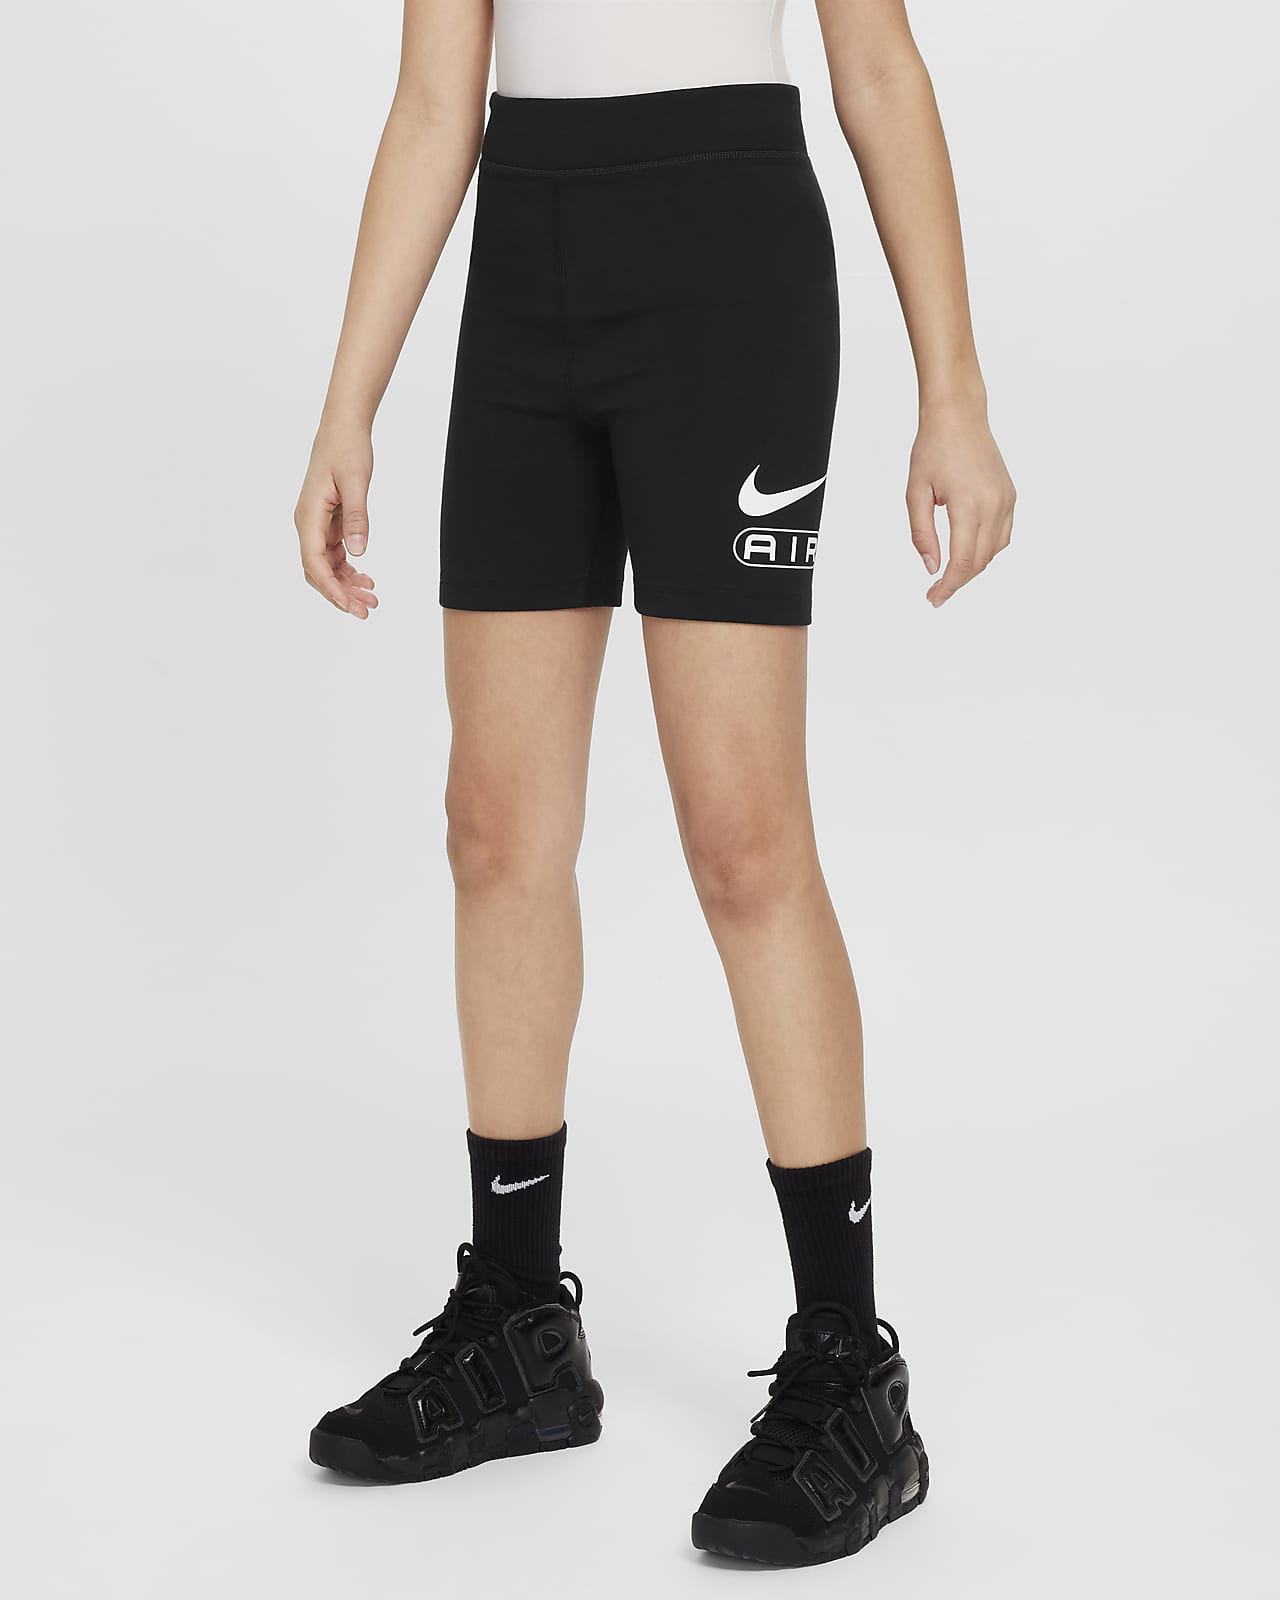 Shorts da ciclista Nike Air – Bambina/Ragazza